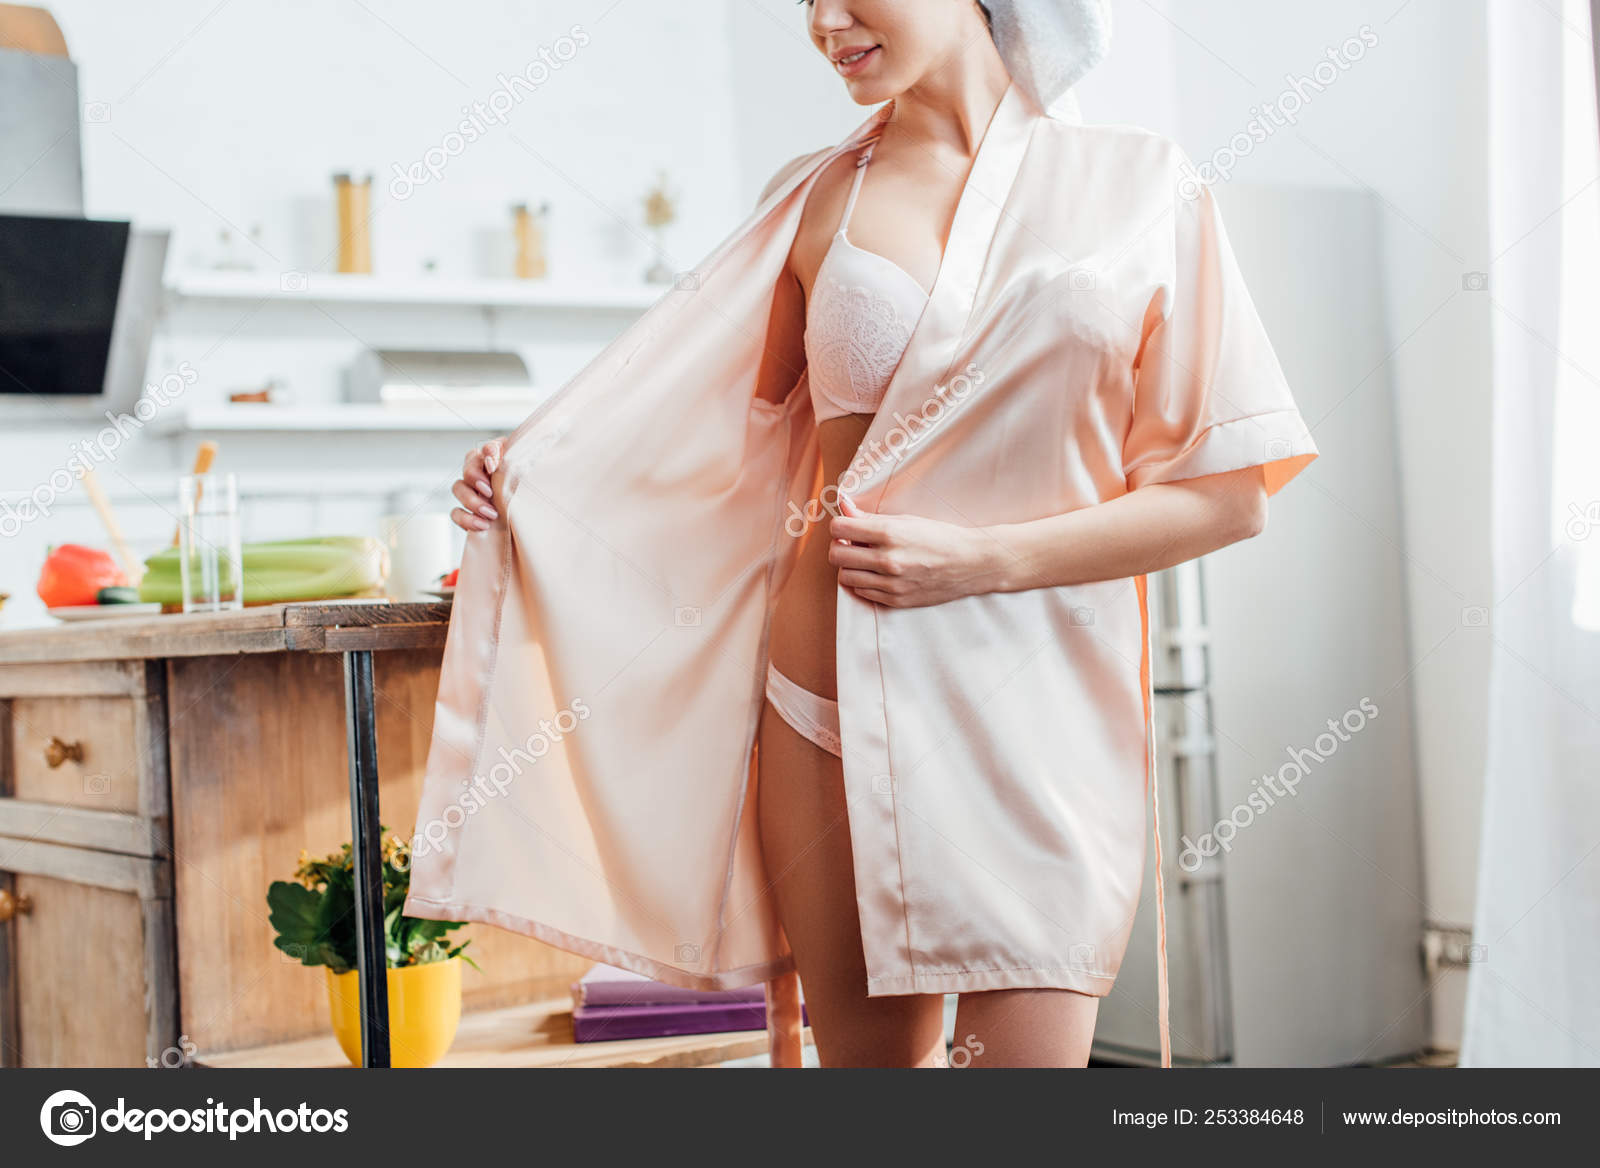 Красотка распахнула халат возле посудомоечной машины